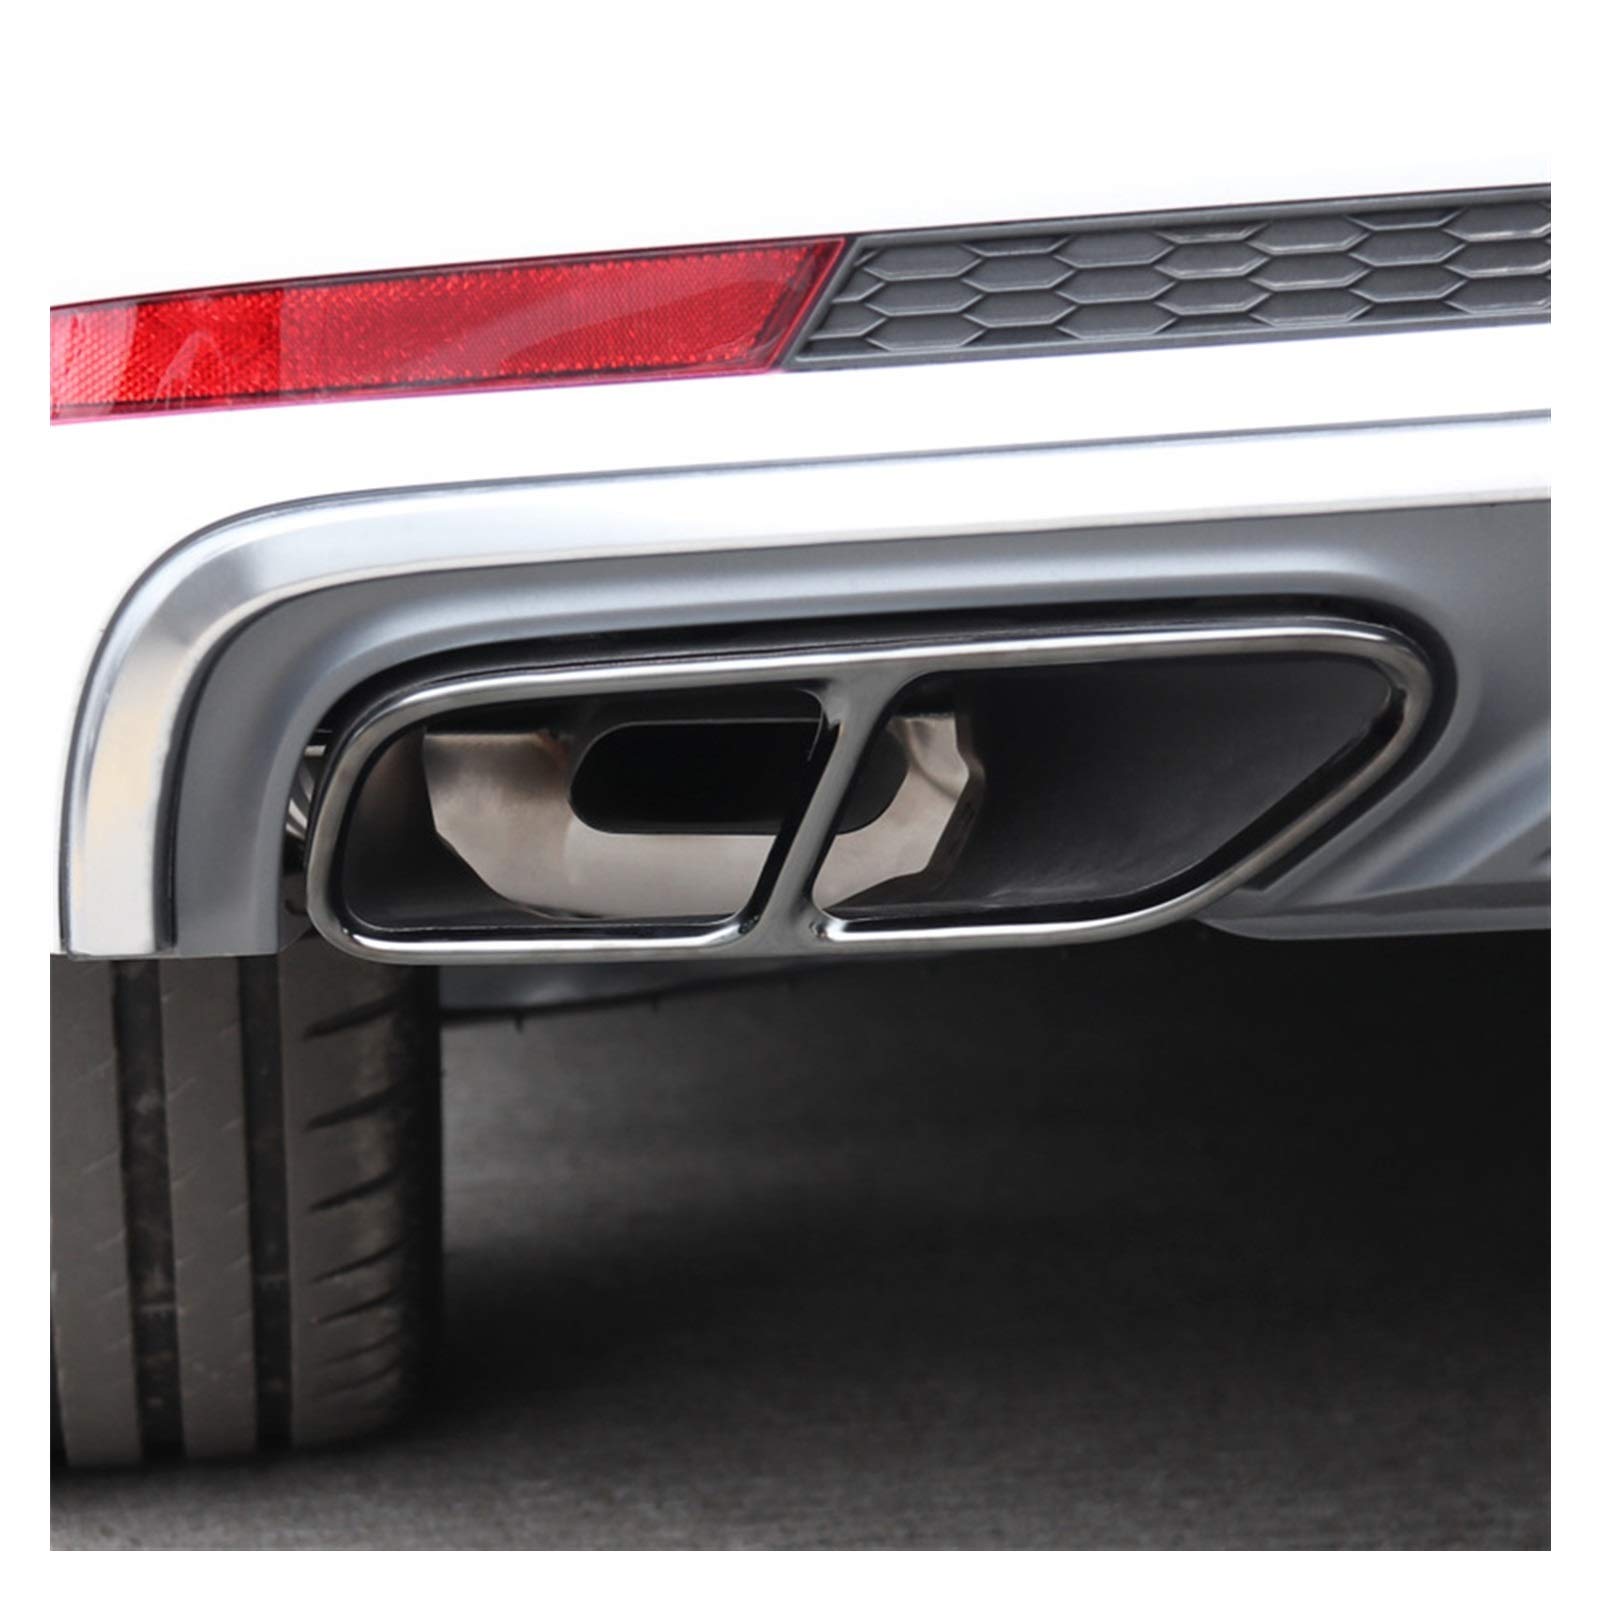 ZLLD Auspuffblenden Für Audi A4 B9 2019 Edelstahl Heckschacht Rohr Modifiziert Abdeckung Trim Auto Auspuff Schwanzrohre Dekoration Rahmen Endrohr Schalldampf (Farbe : Schwarz)